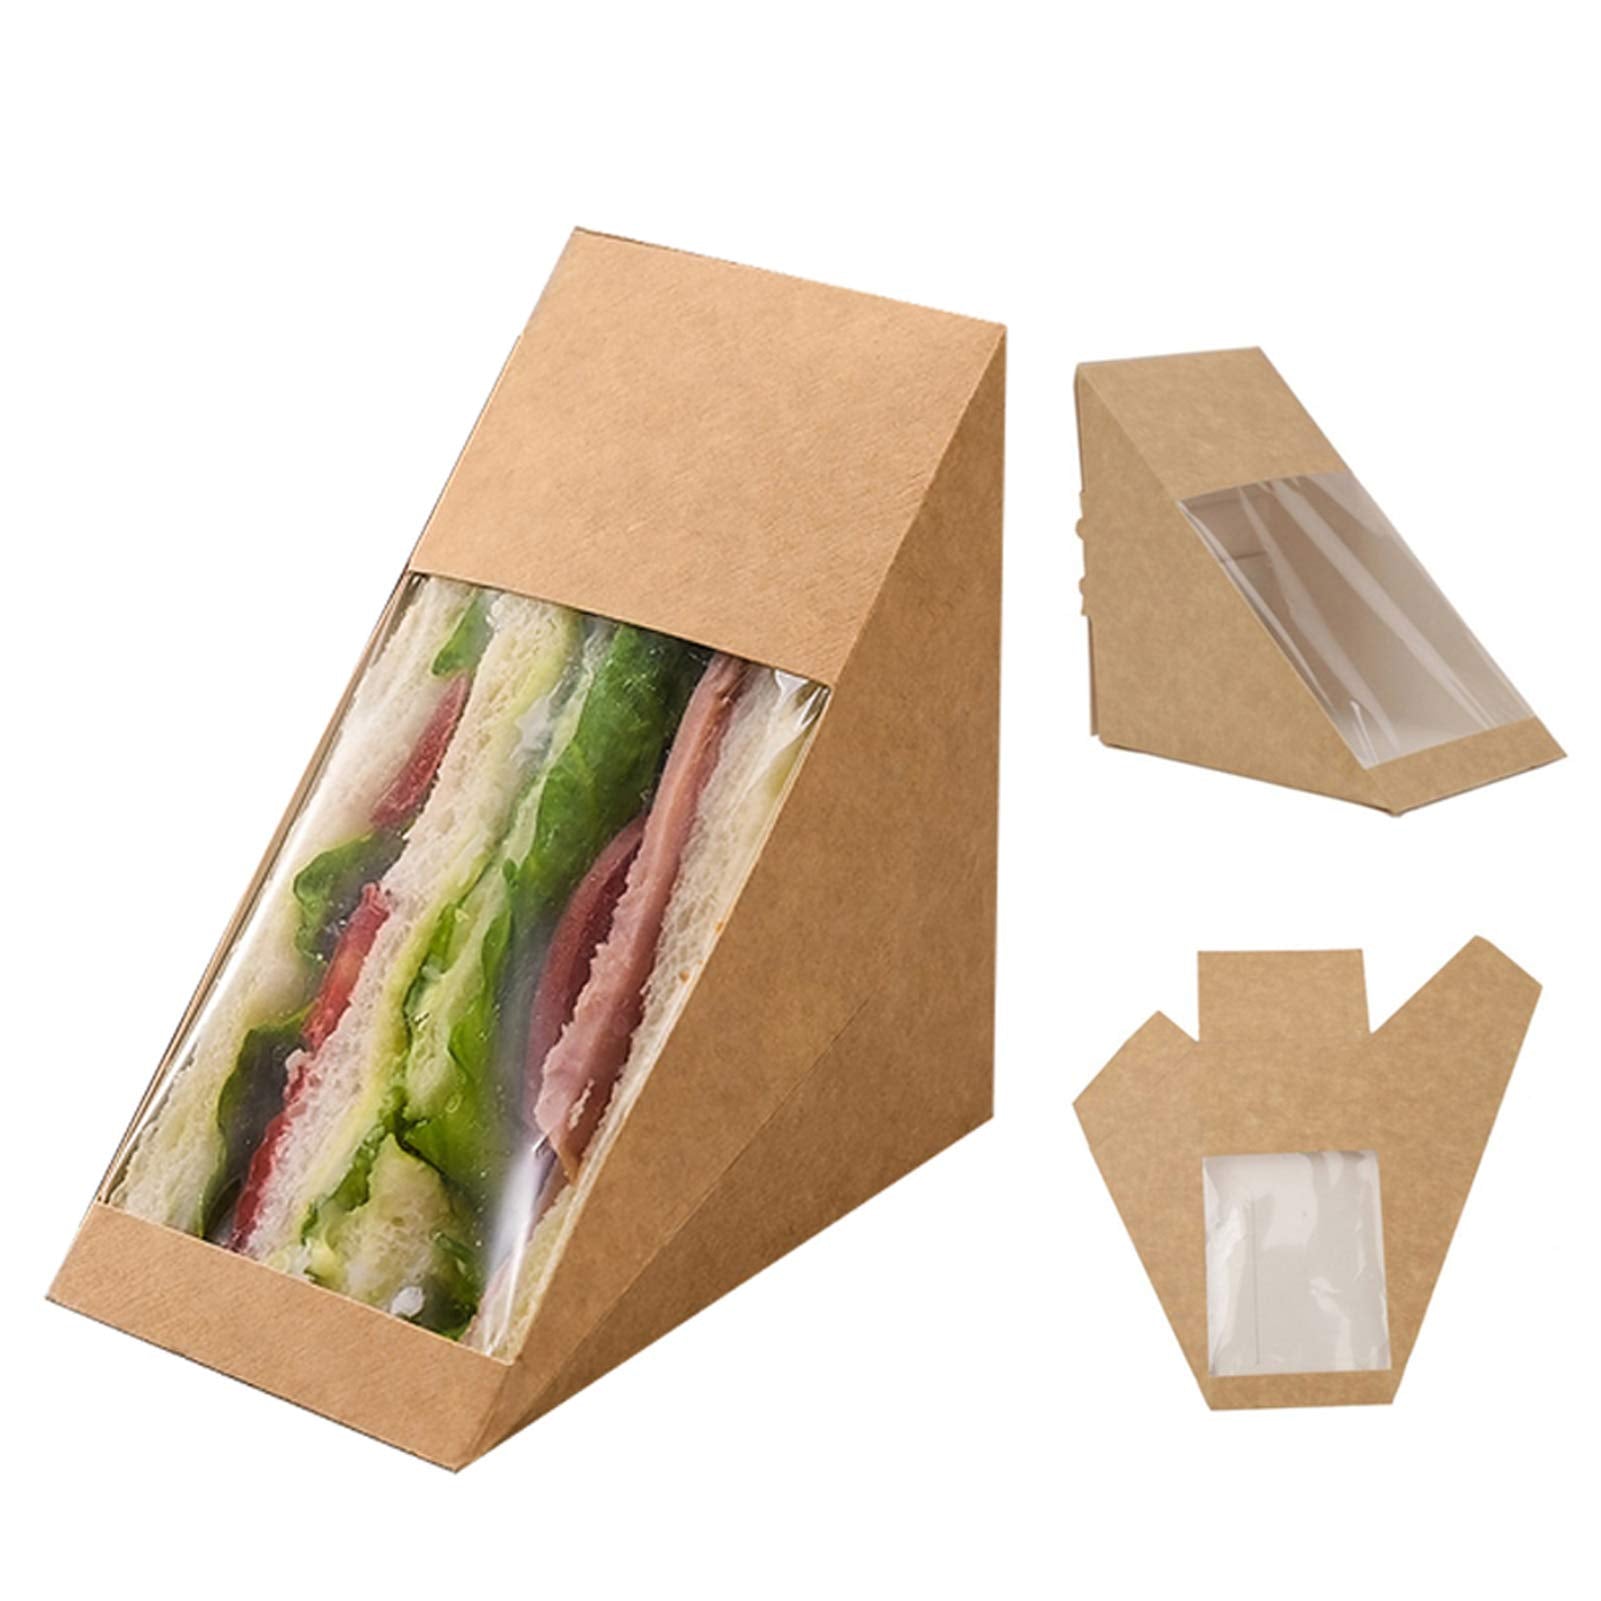 Sandwich Cardboard Packaging